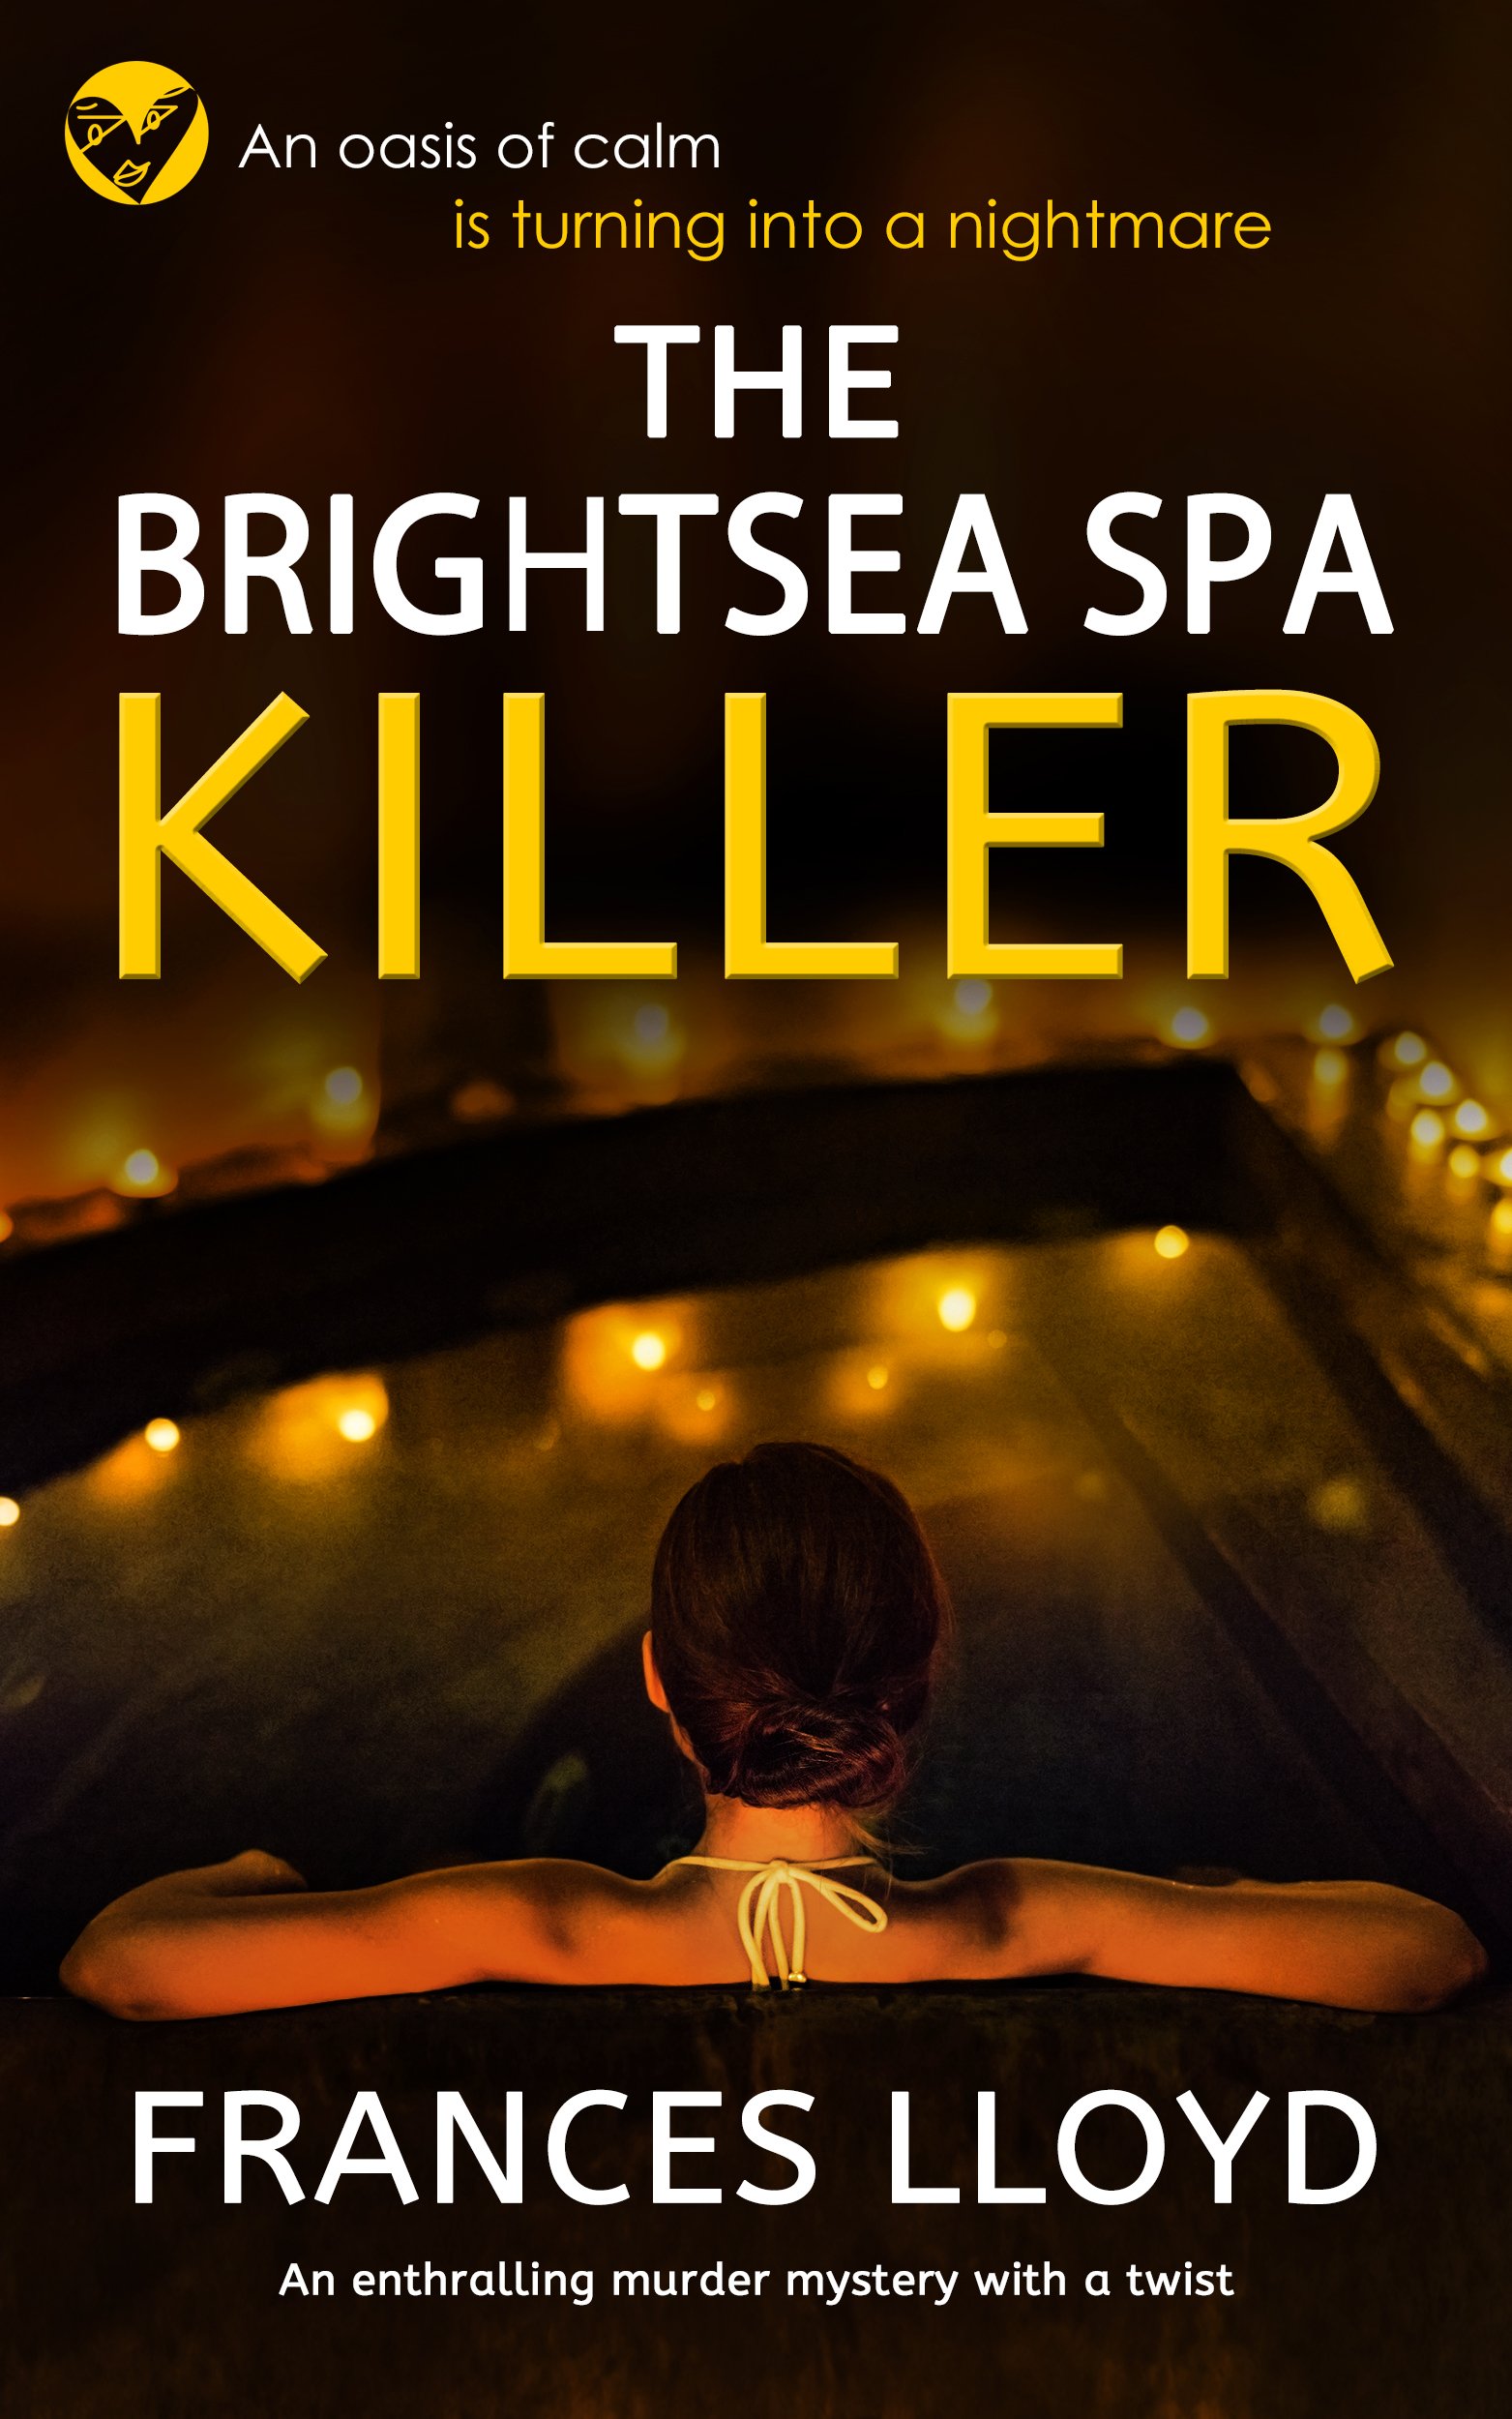 THE BRIGHTSEA SPA KILLER publish cover.jpg